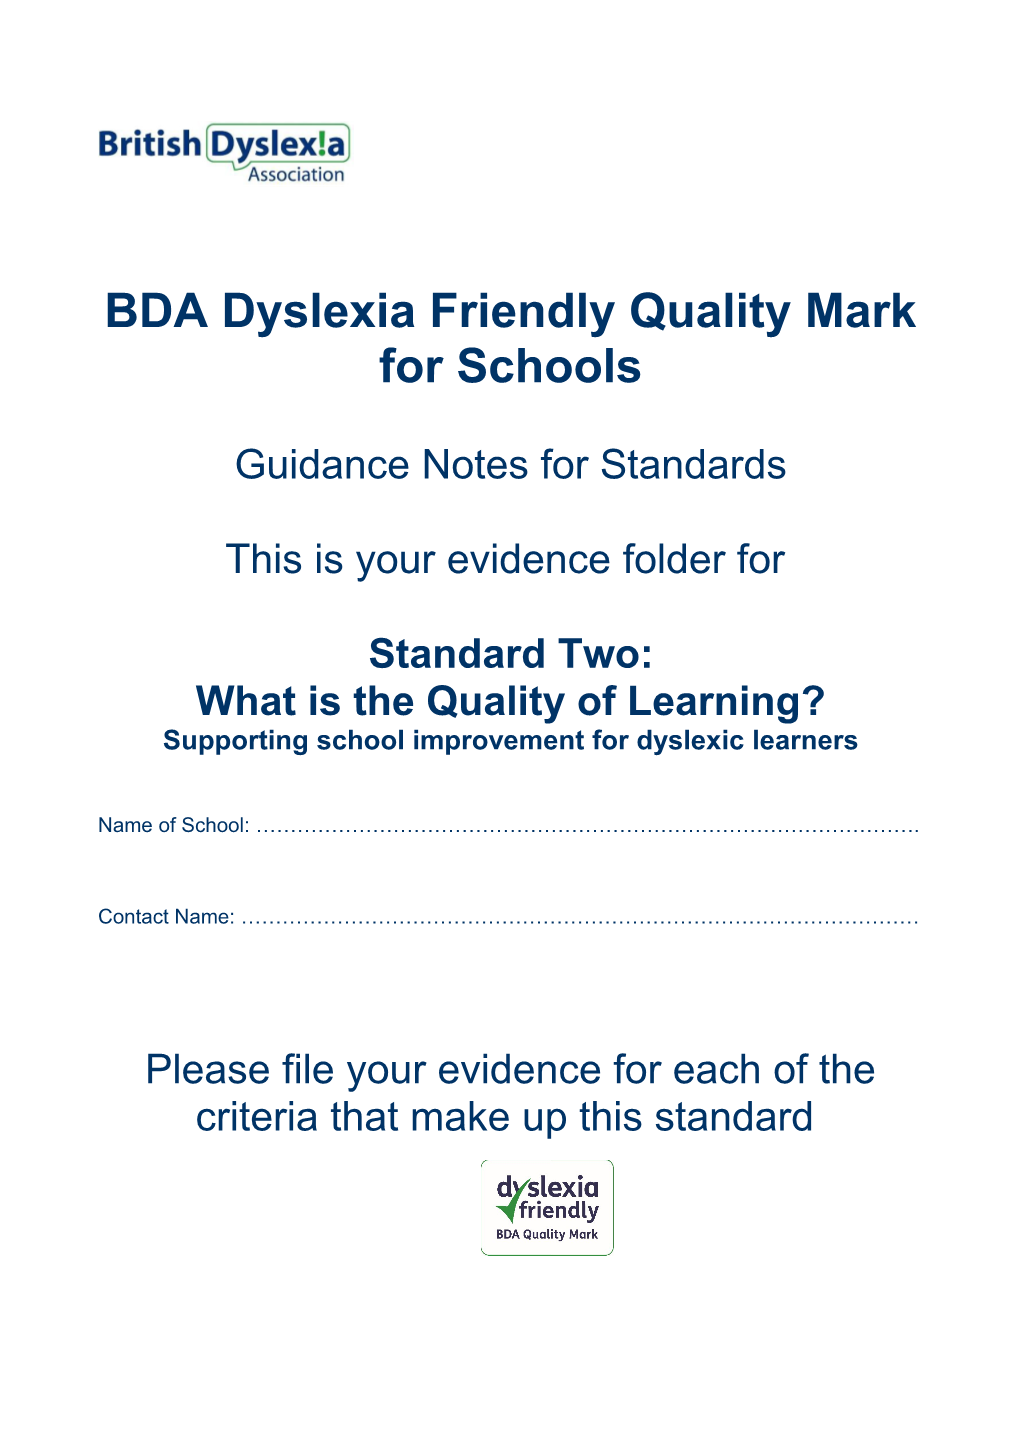 BDA Dyslexia Friendly Quality Mark for Schools